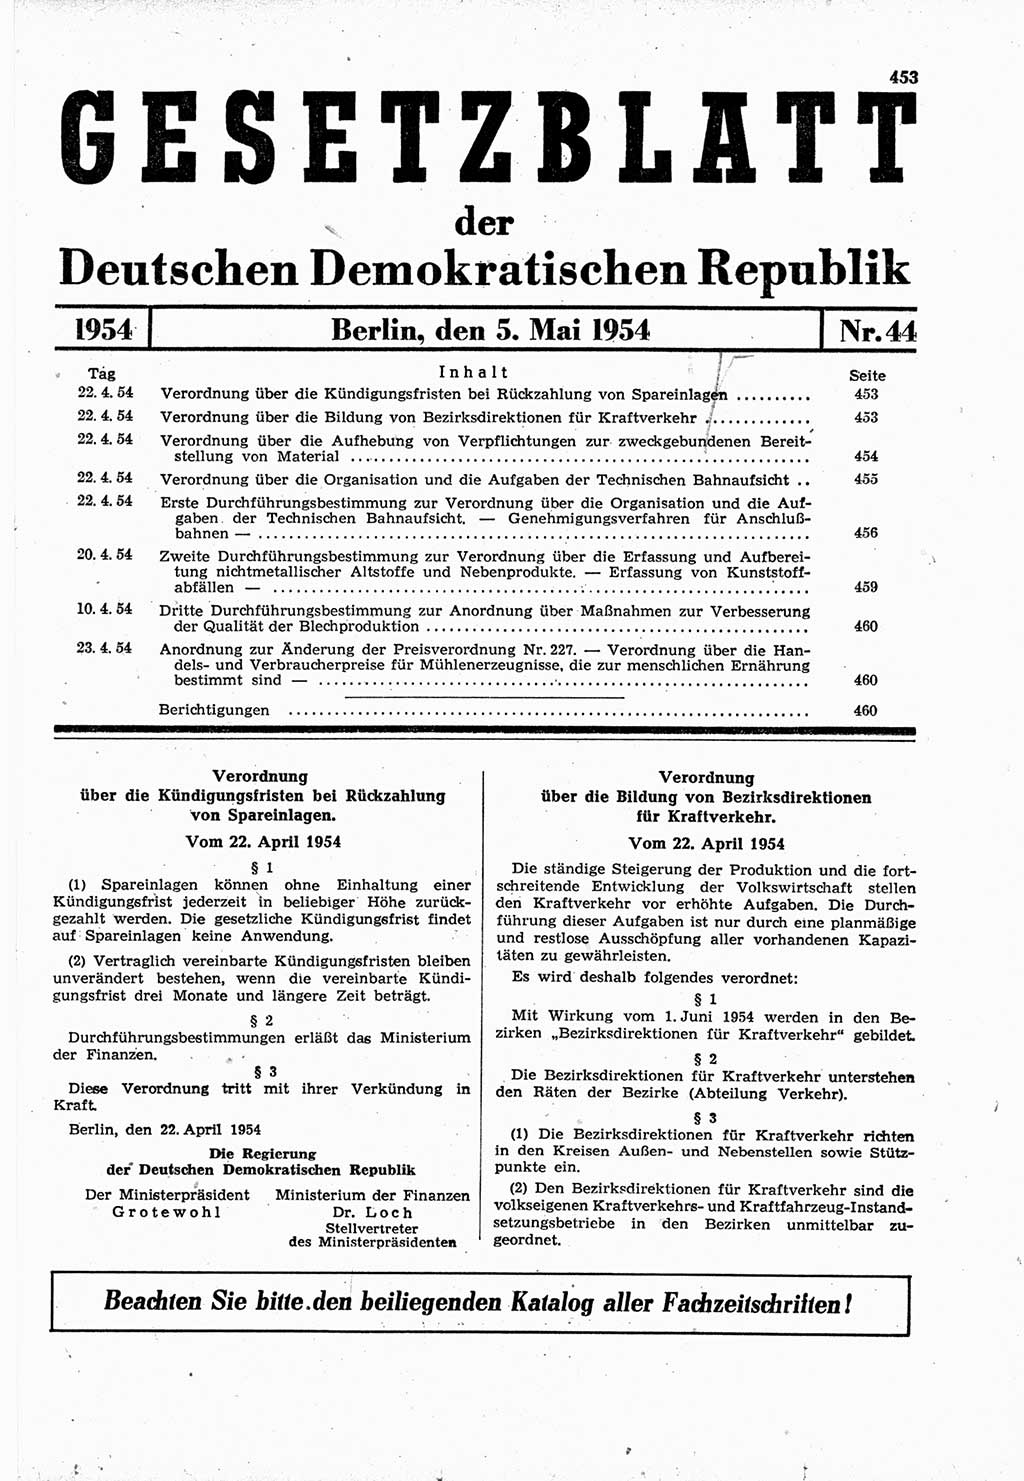 Gesetzblatt (GBl.) der Deutschen Demokratischen Republik (DDR) 1954, Seite 453 (GBl. DDR 1954, S. 453)